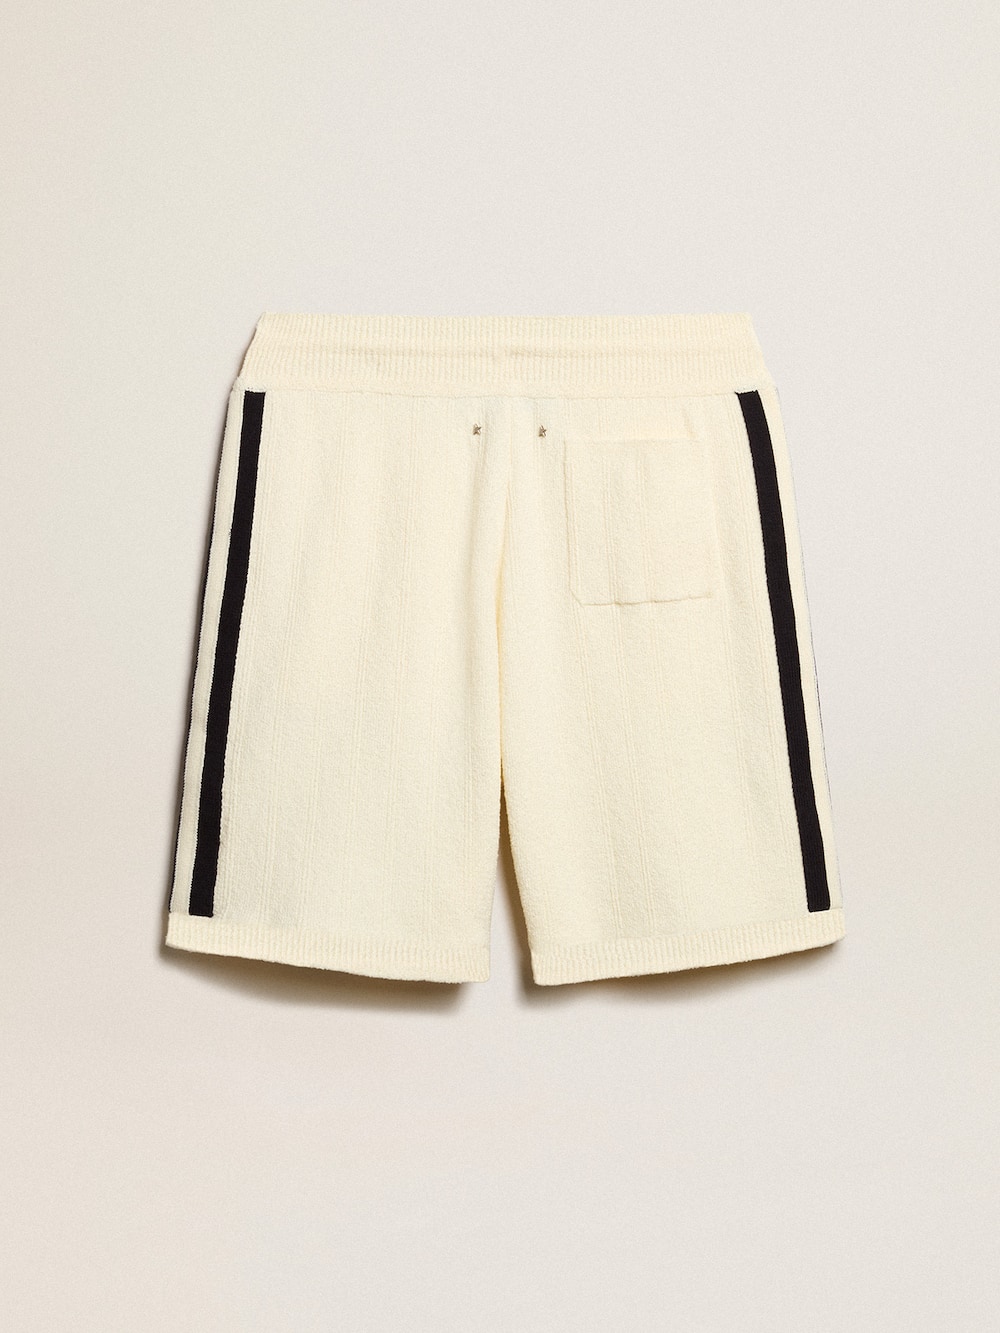 Golden Goose - Pantalón corto de hombre color blanco antiguo con tejido acanalado azul en los lados in 